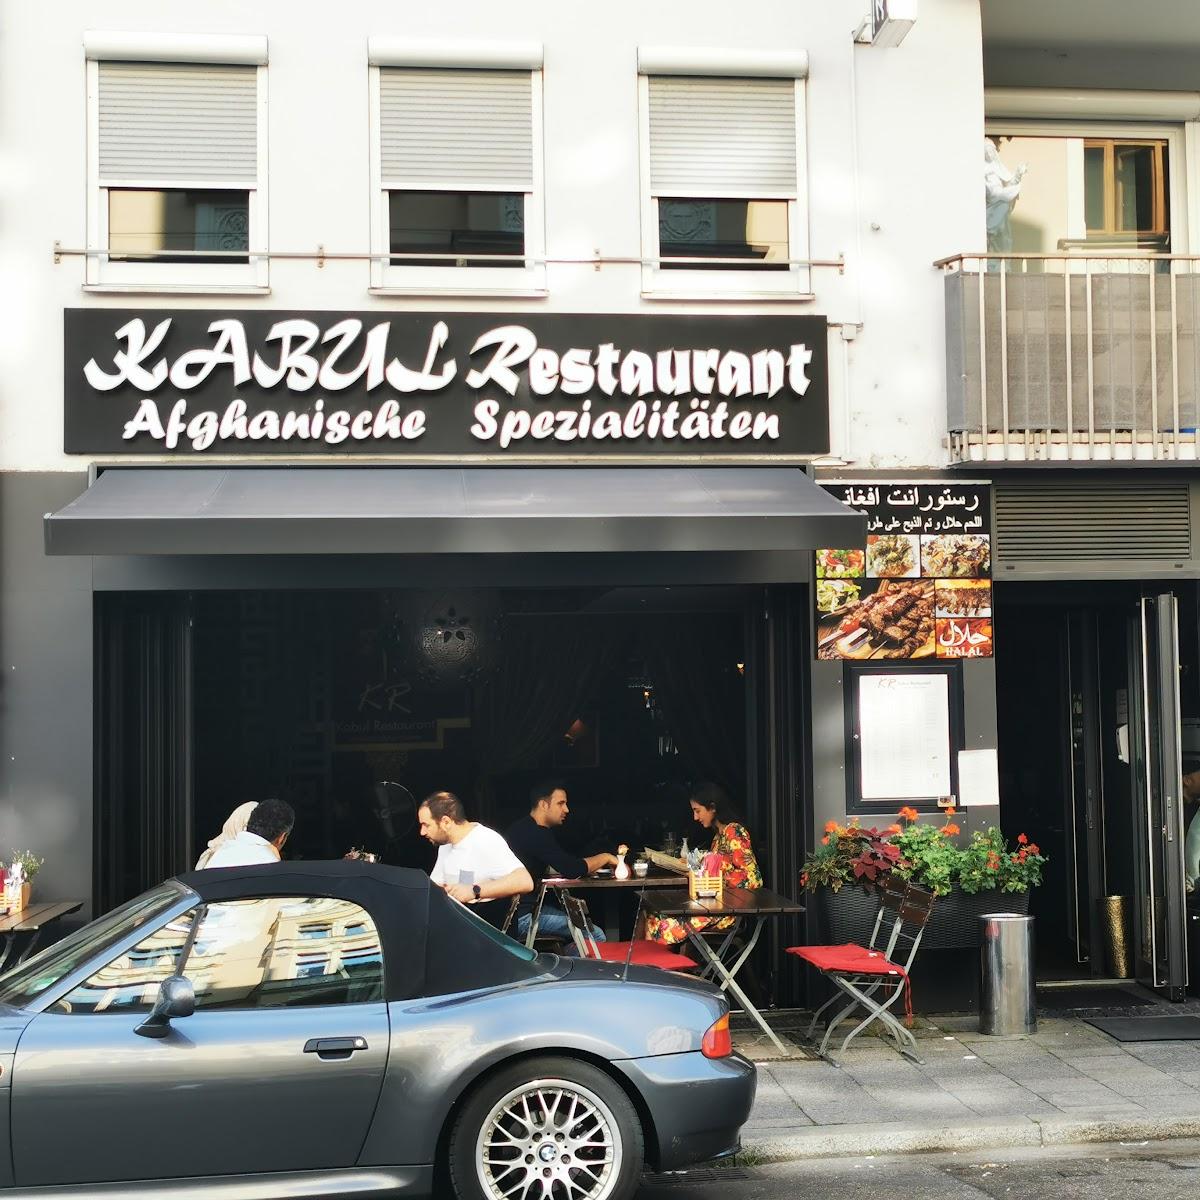 Restaurant "Kabul Restaurant München" in München